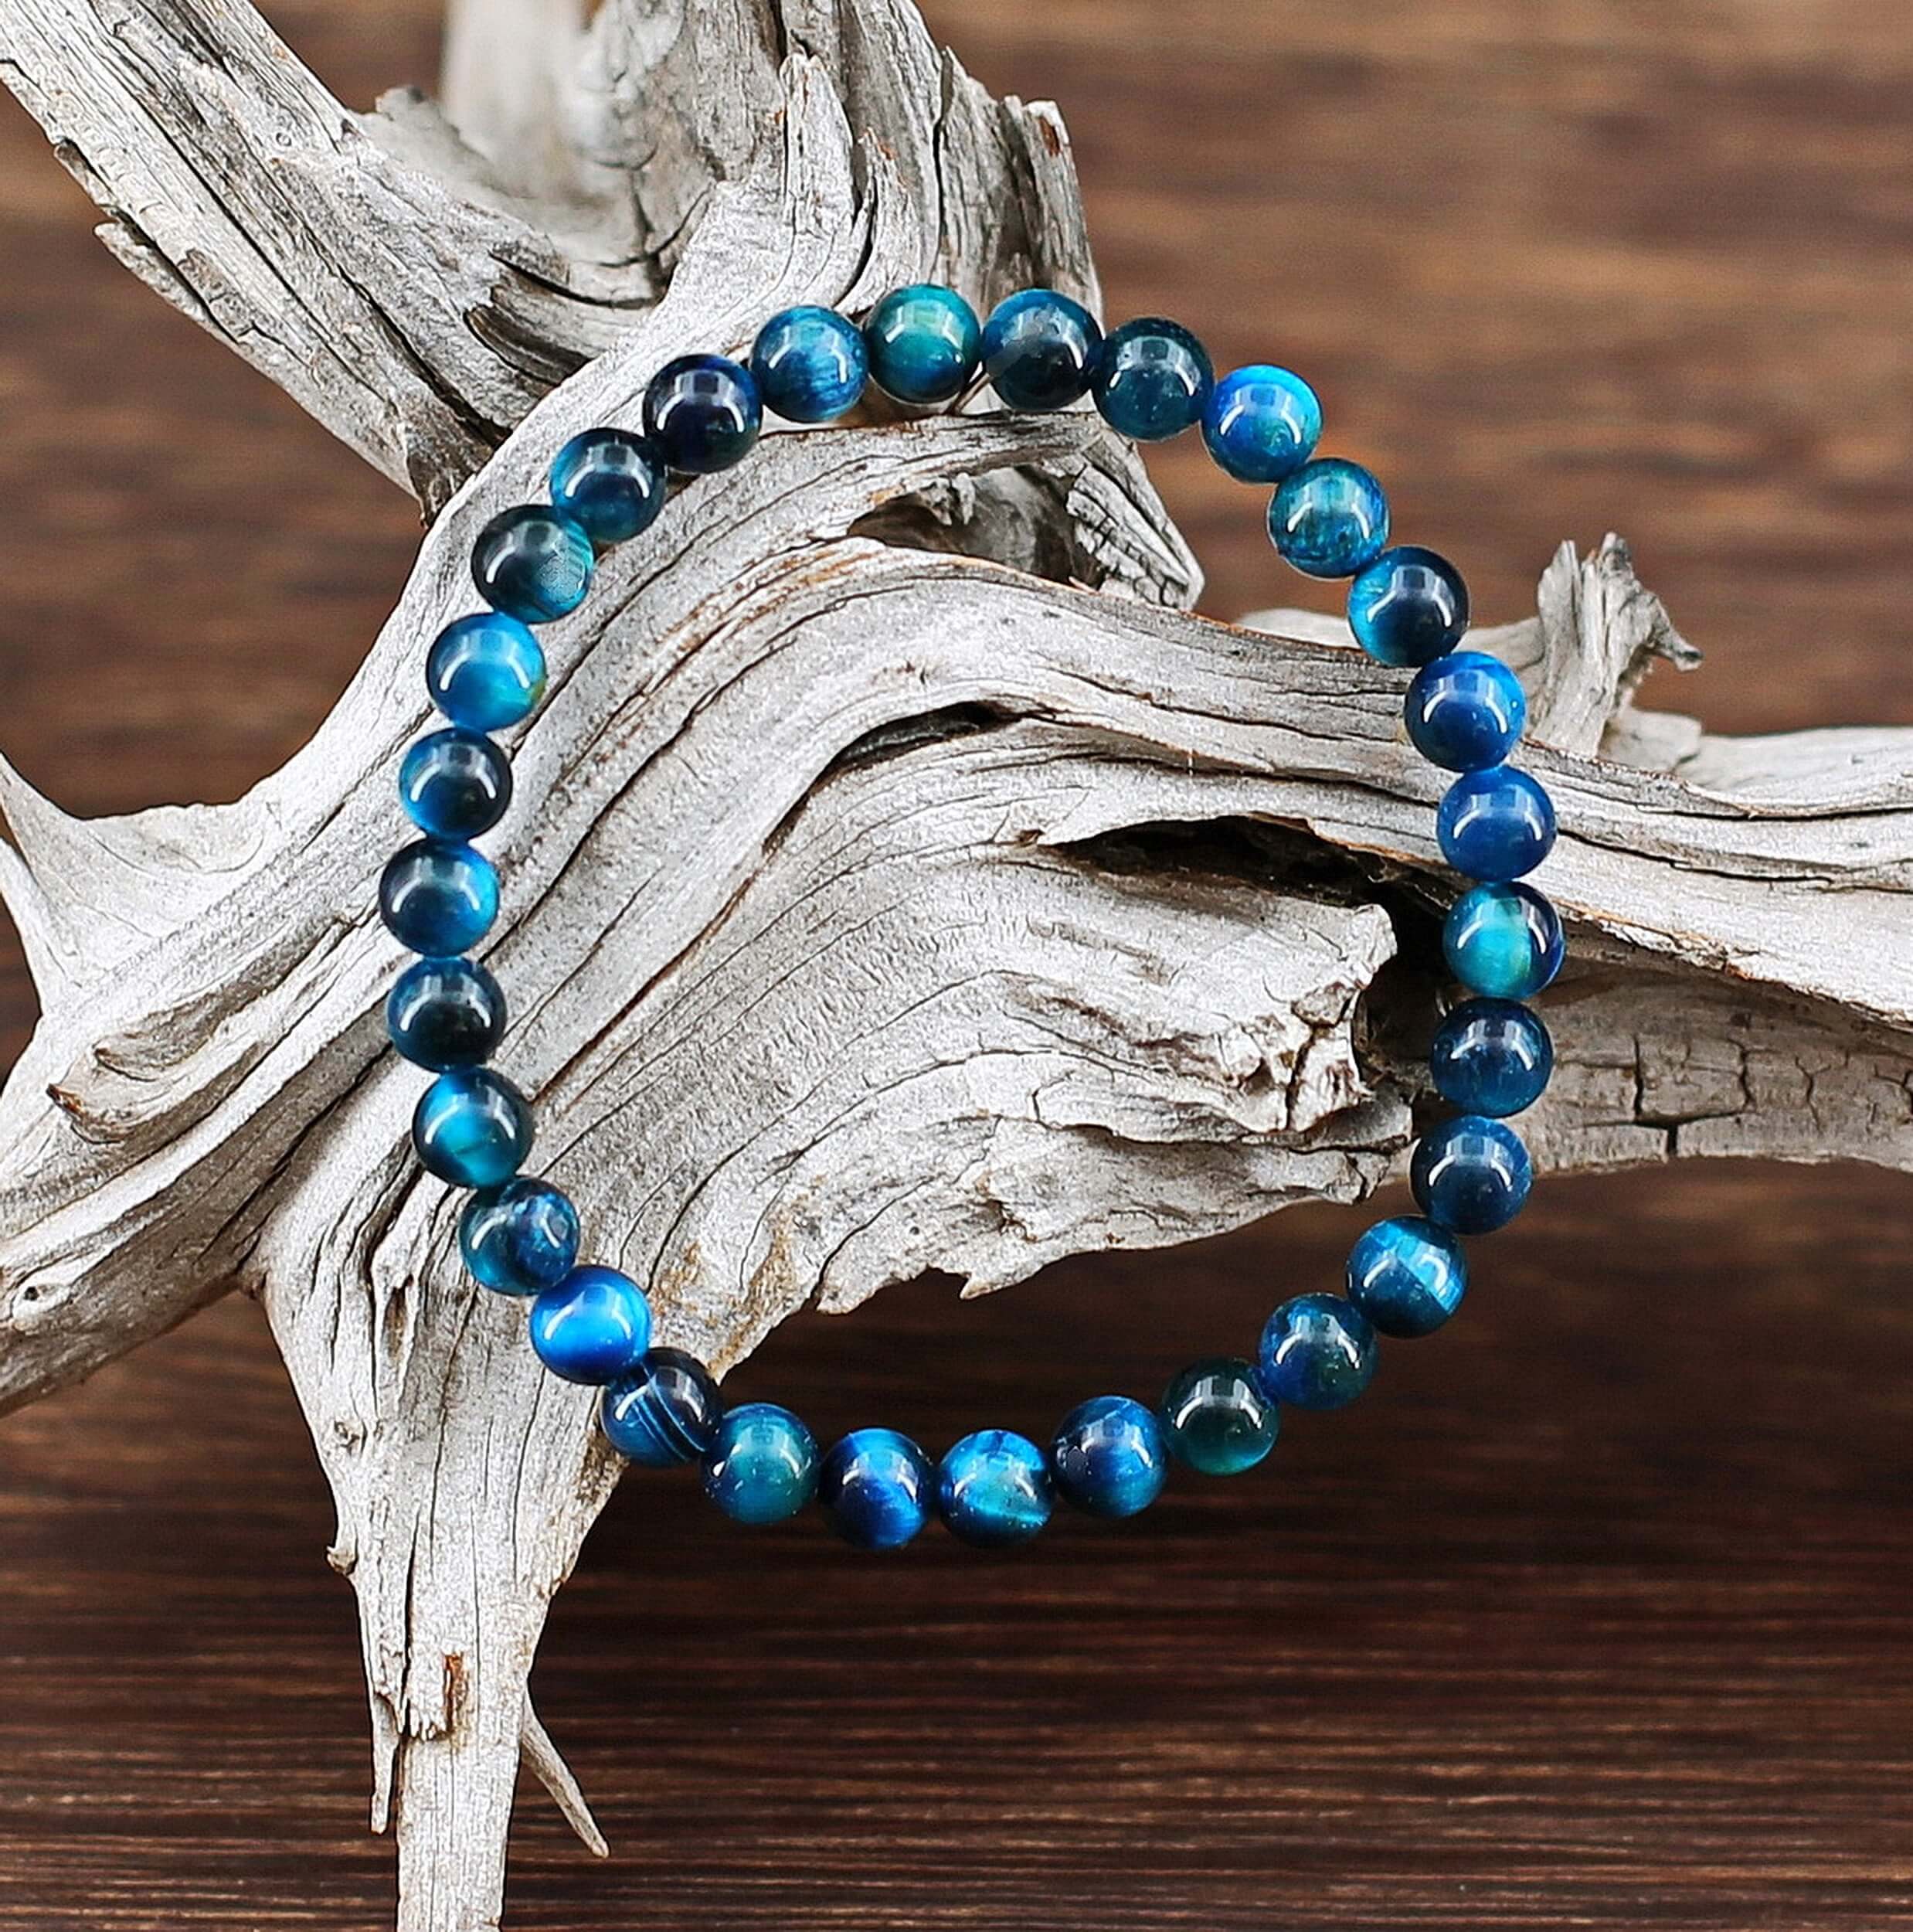 Ce fin bracelet composé de perles de pierre Oeil de tigre colorées de couleur queue de Paon, couleur au fort symbole de guérison, dans la tradition du Bouddhisme Tibétain.